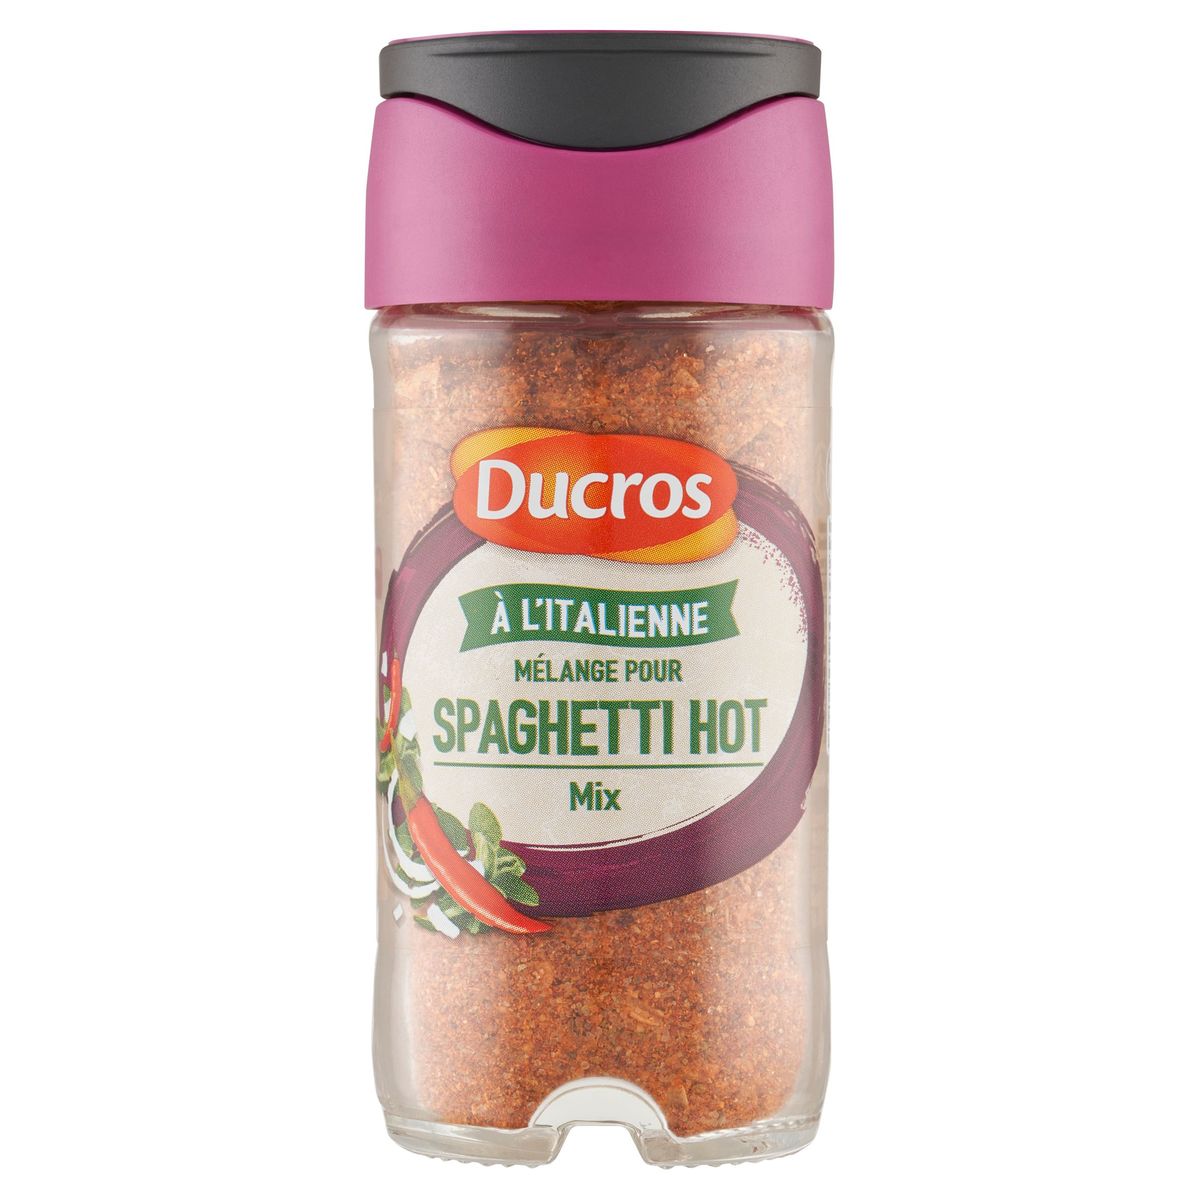 Ducros Spaghetti Hot Mix 65 g